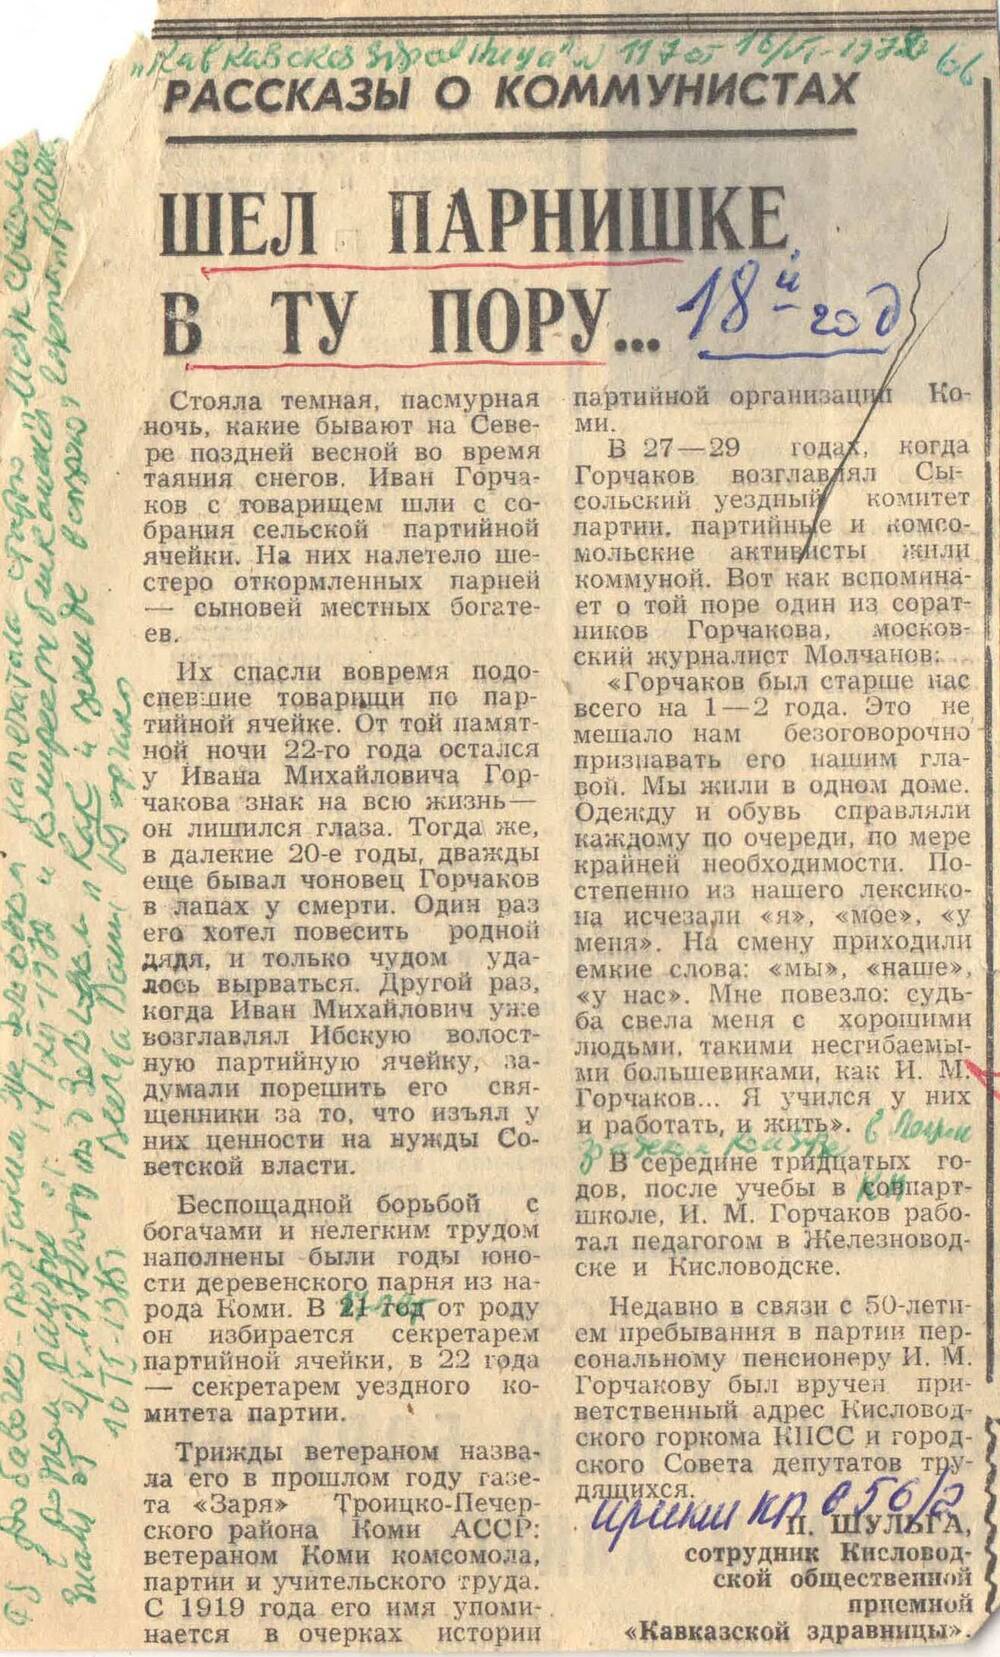 Вырезка из газеты Кавказская здравница № 117 от 16.06.1972 г. со статьей Шел парнишке в ту пору...